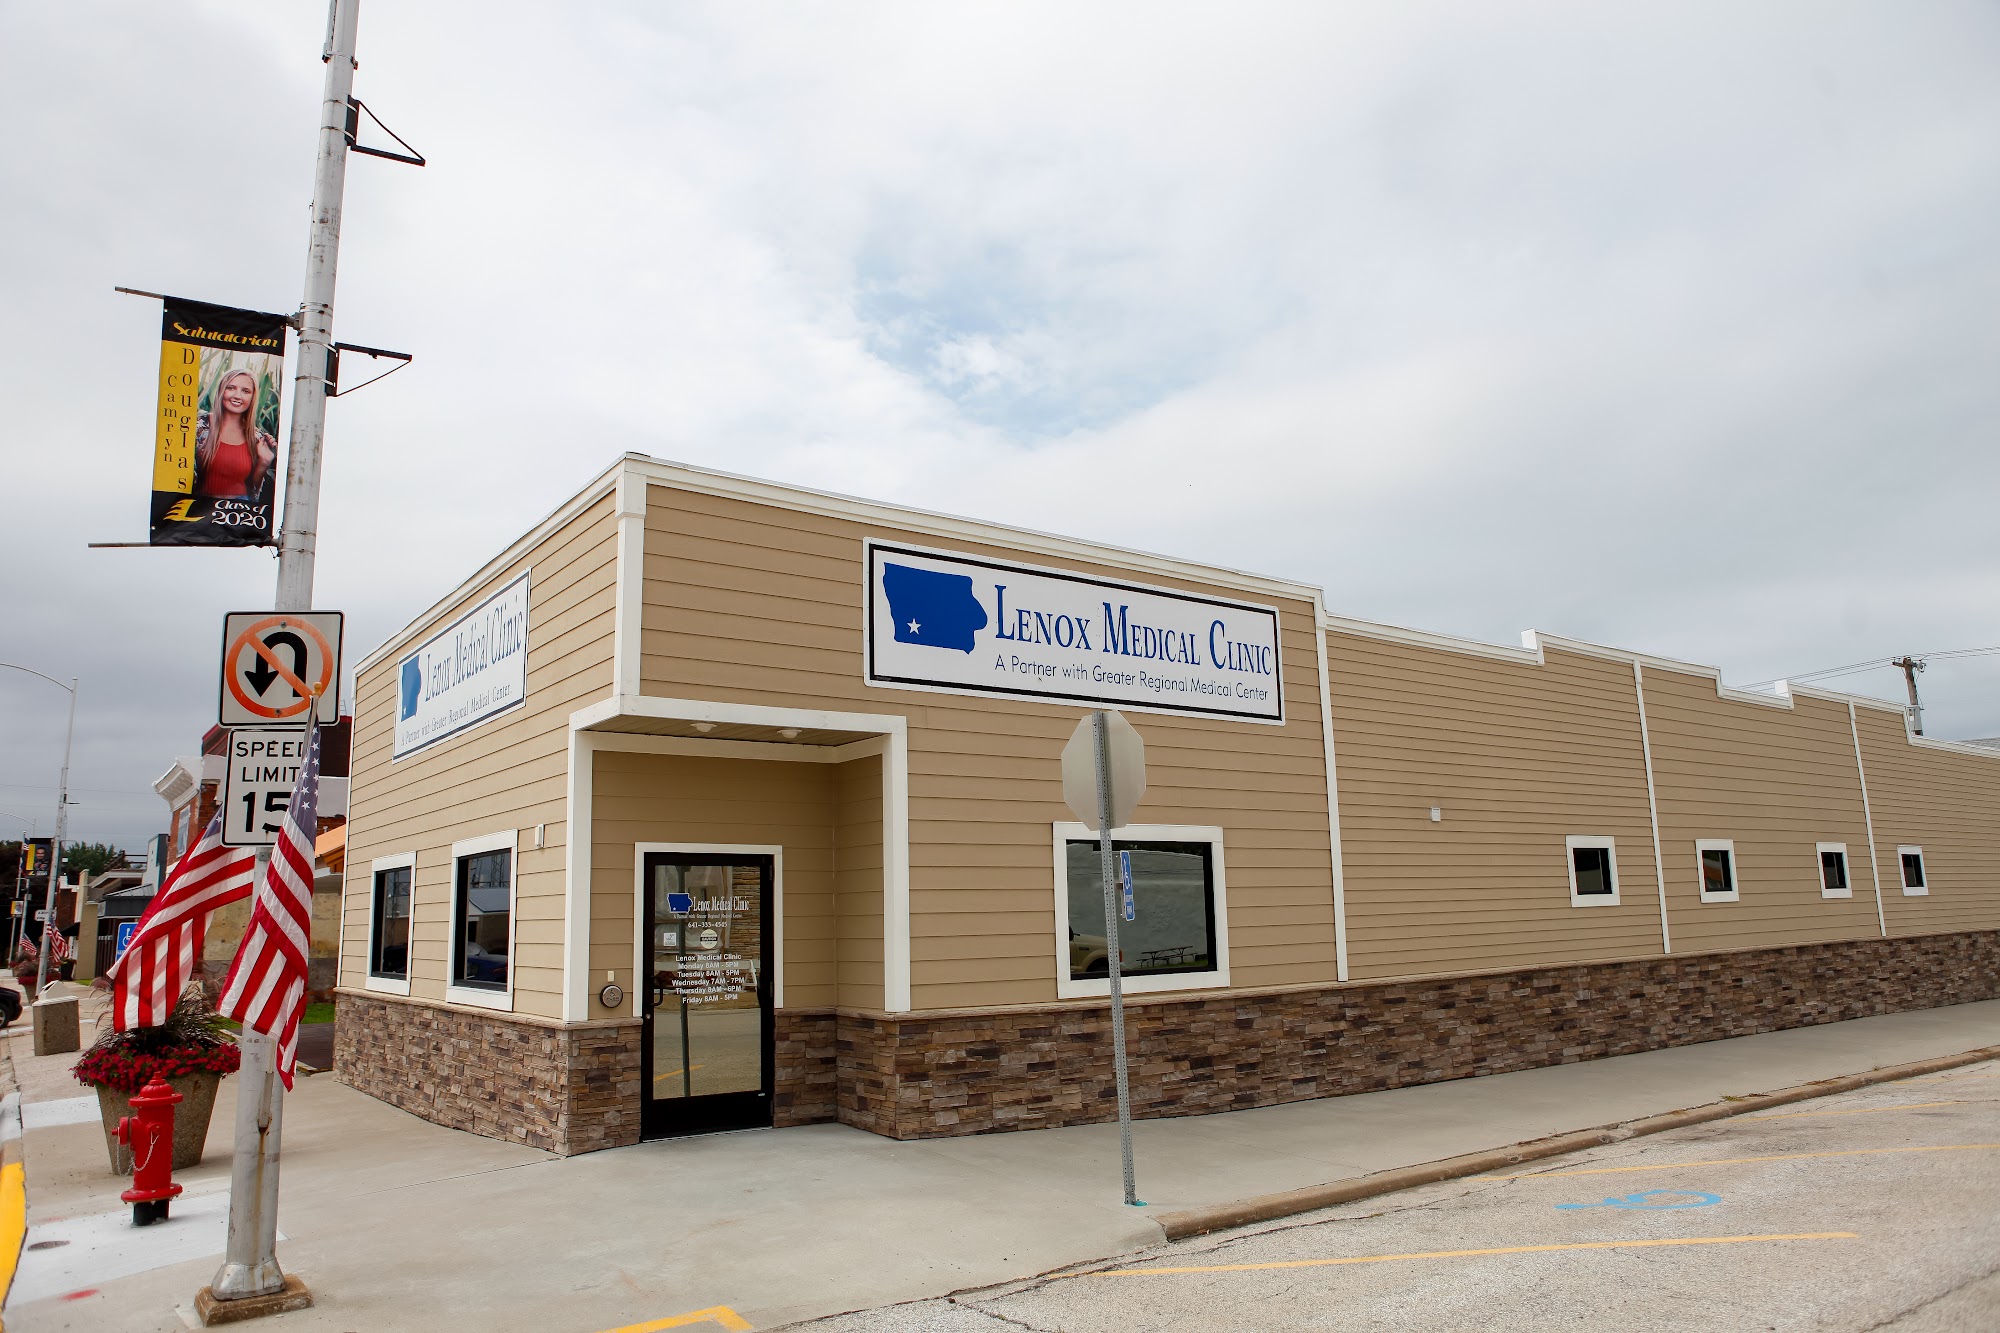 Lenox Medical Clinic 100 S Main St, Lenox Iowa 50851